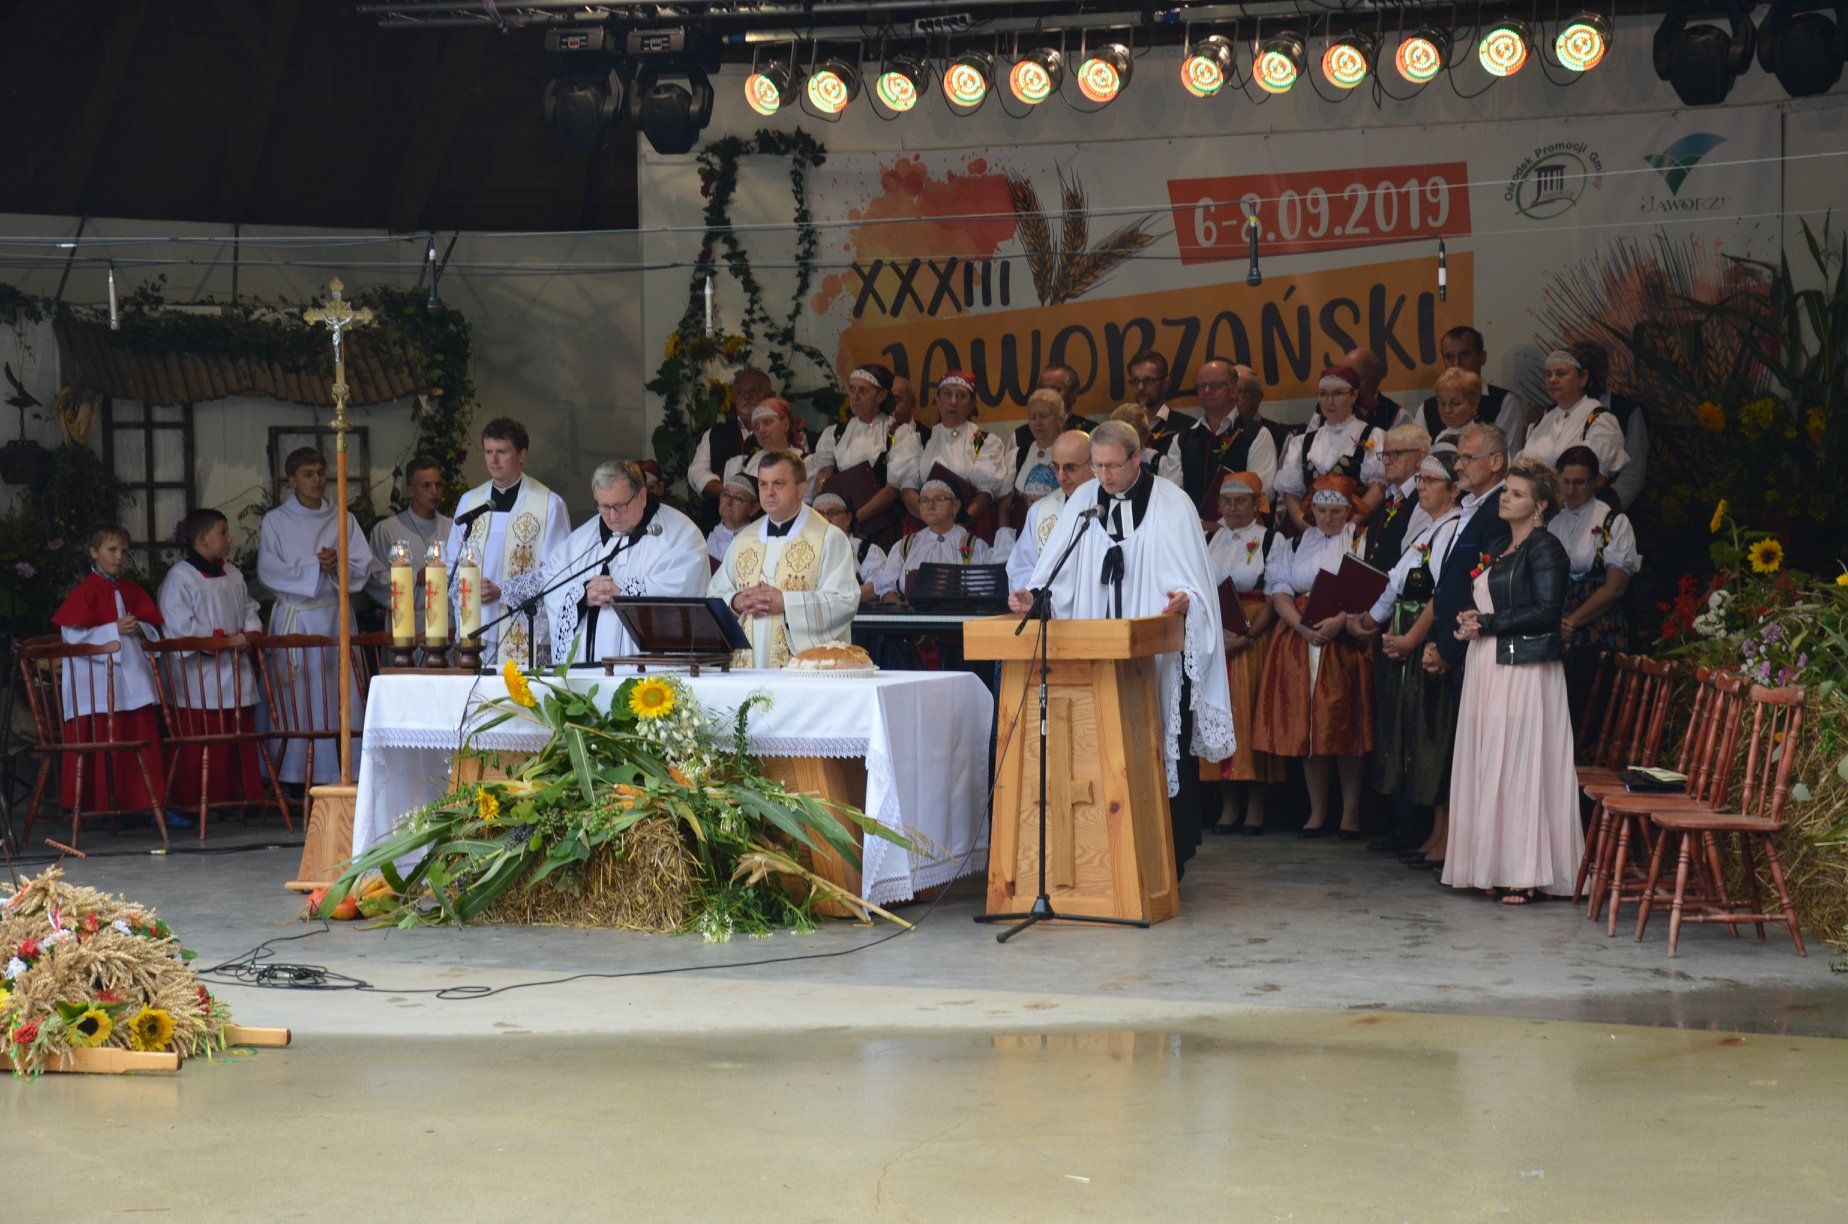 Nabożeństwo ekumeniczne, na scenie amfiteatru stoją księża obu jaworzańskich parafii, starostowie Jaworzańskiego Września oraz chór